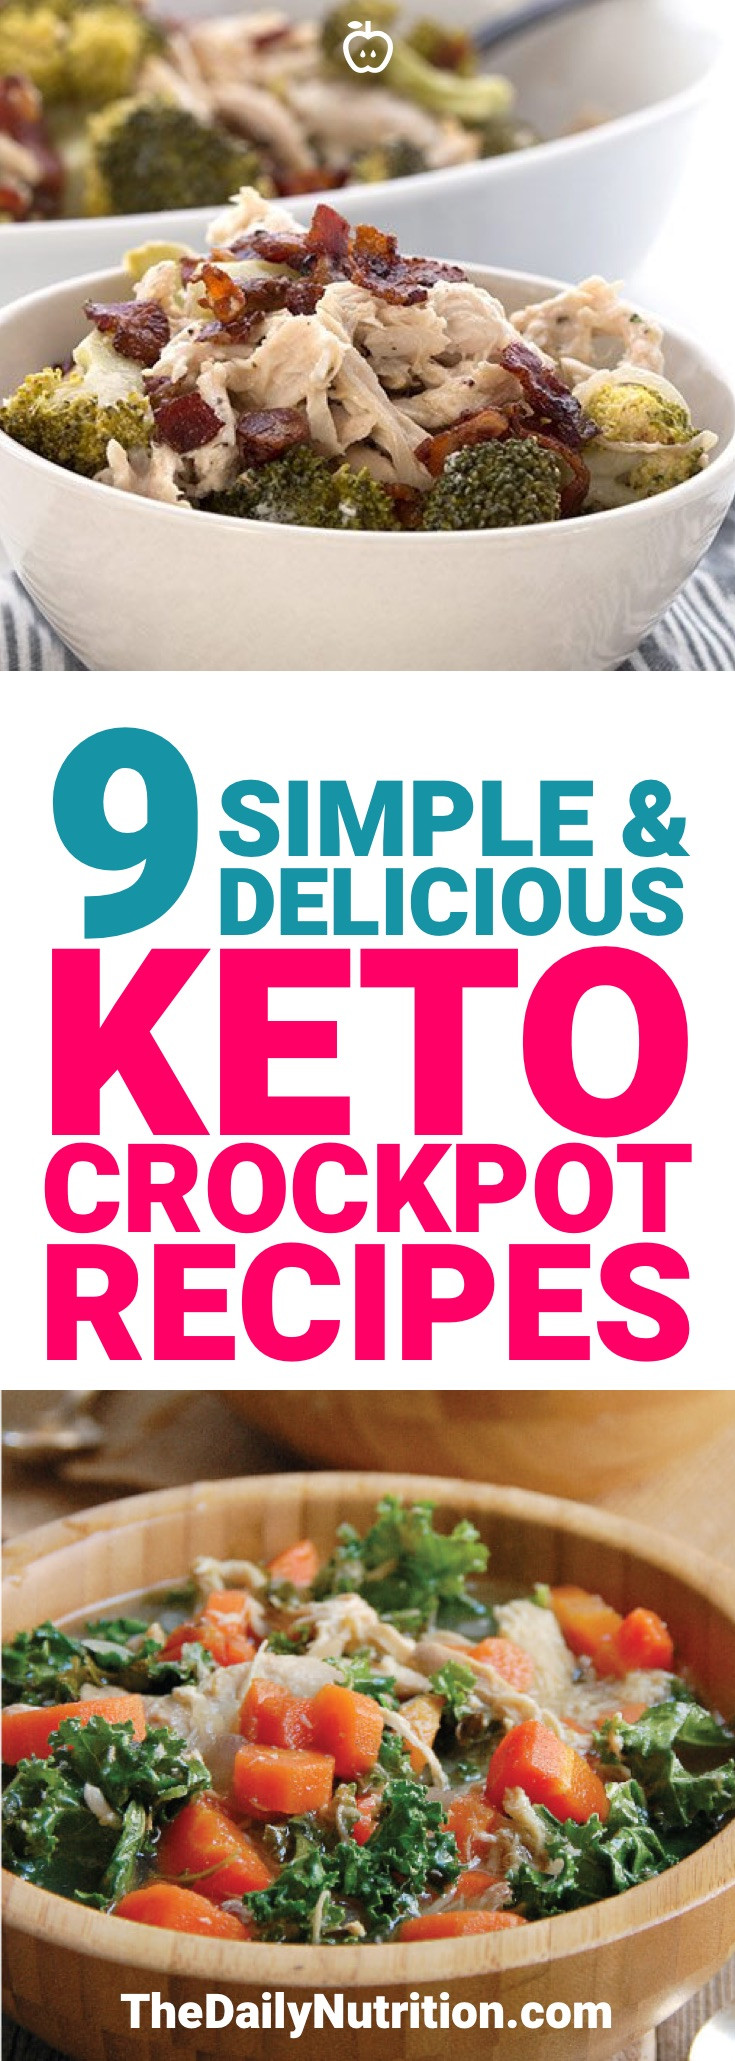 Easy Keto Crockpot Recipes
 9 Delicious & Simple Keto Crockpot Recipes to Make Tonight